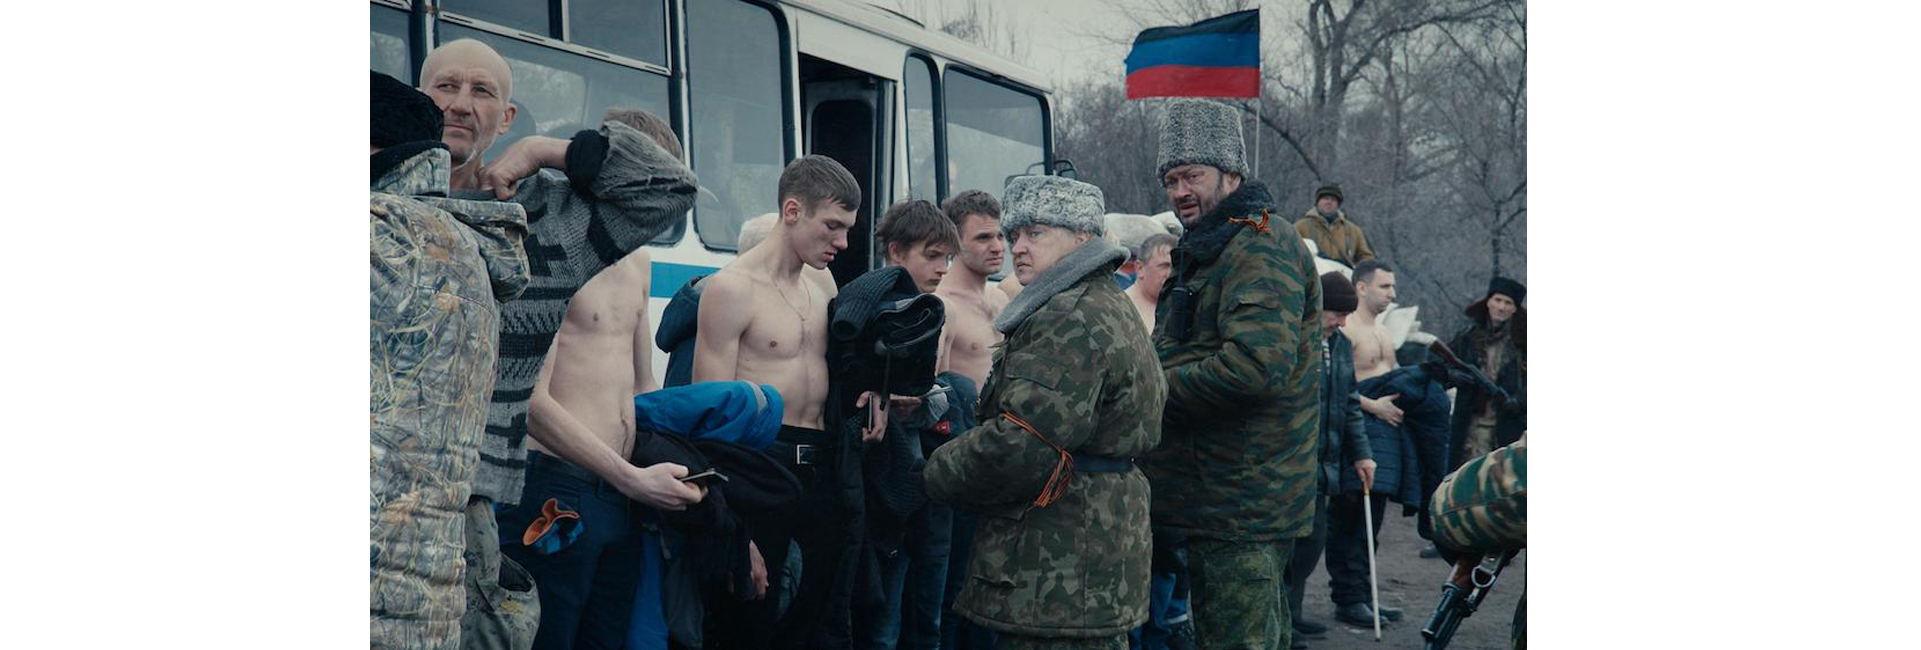 DONBASS, um filme de Sergey Loznitsa